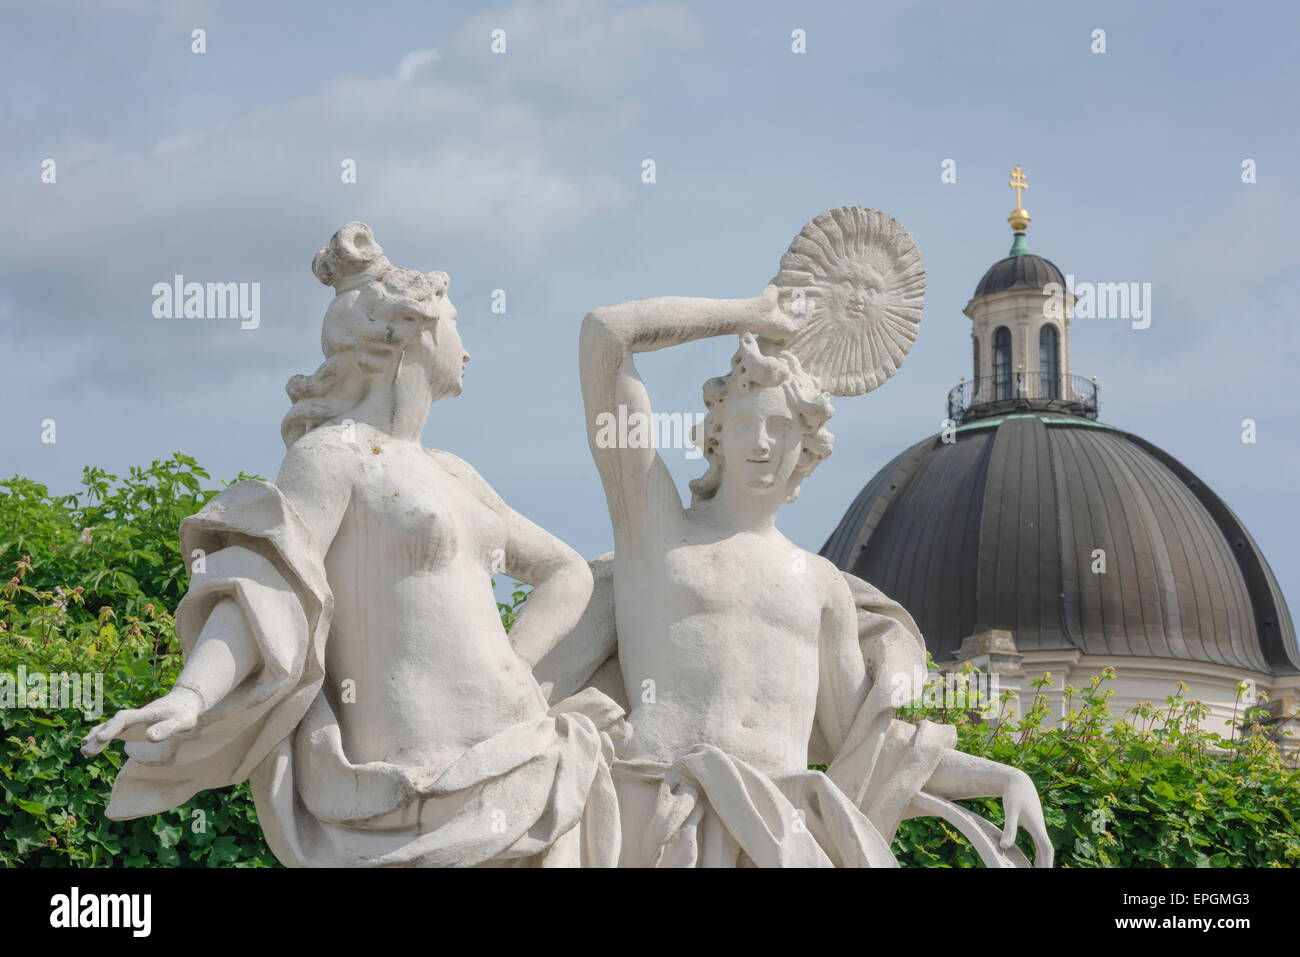 Klassische Statue, zwei griechisch-römische Statuen (Artemis und Apollo), die sich in den formalen Gärten des Schloss Belvedere in Wien, Österreich, befinden. Stockfoto